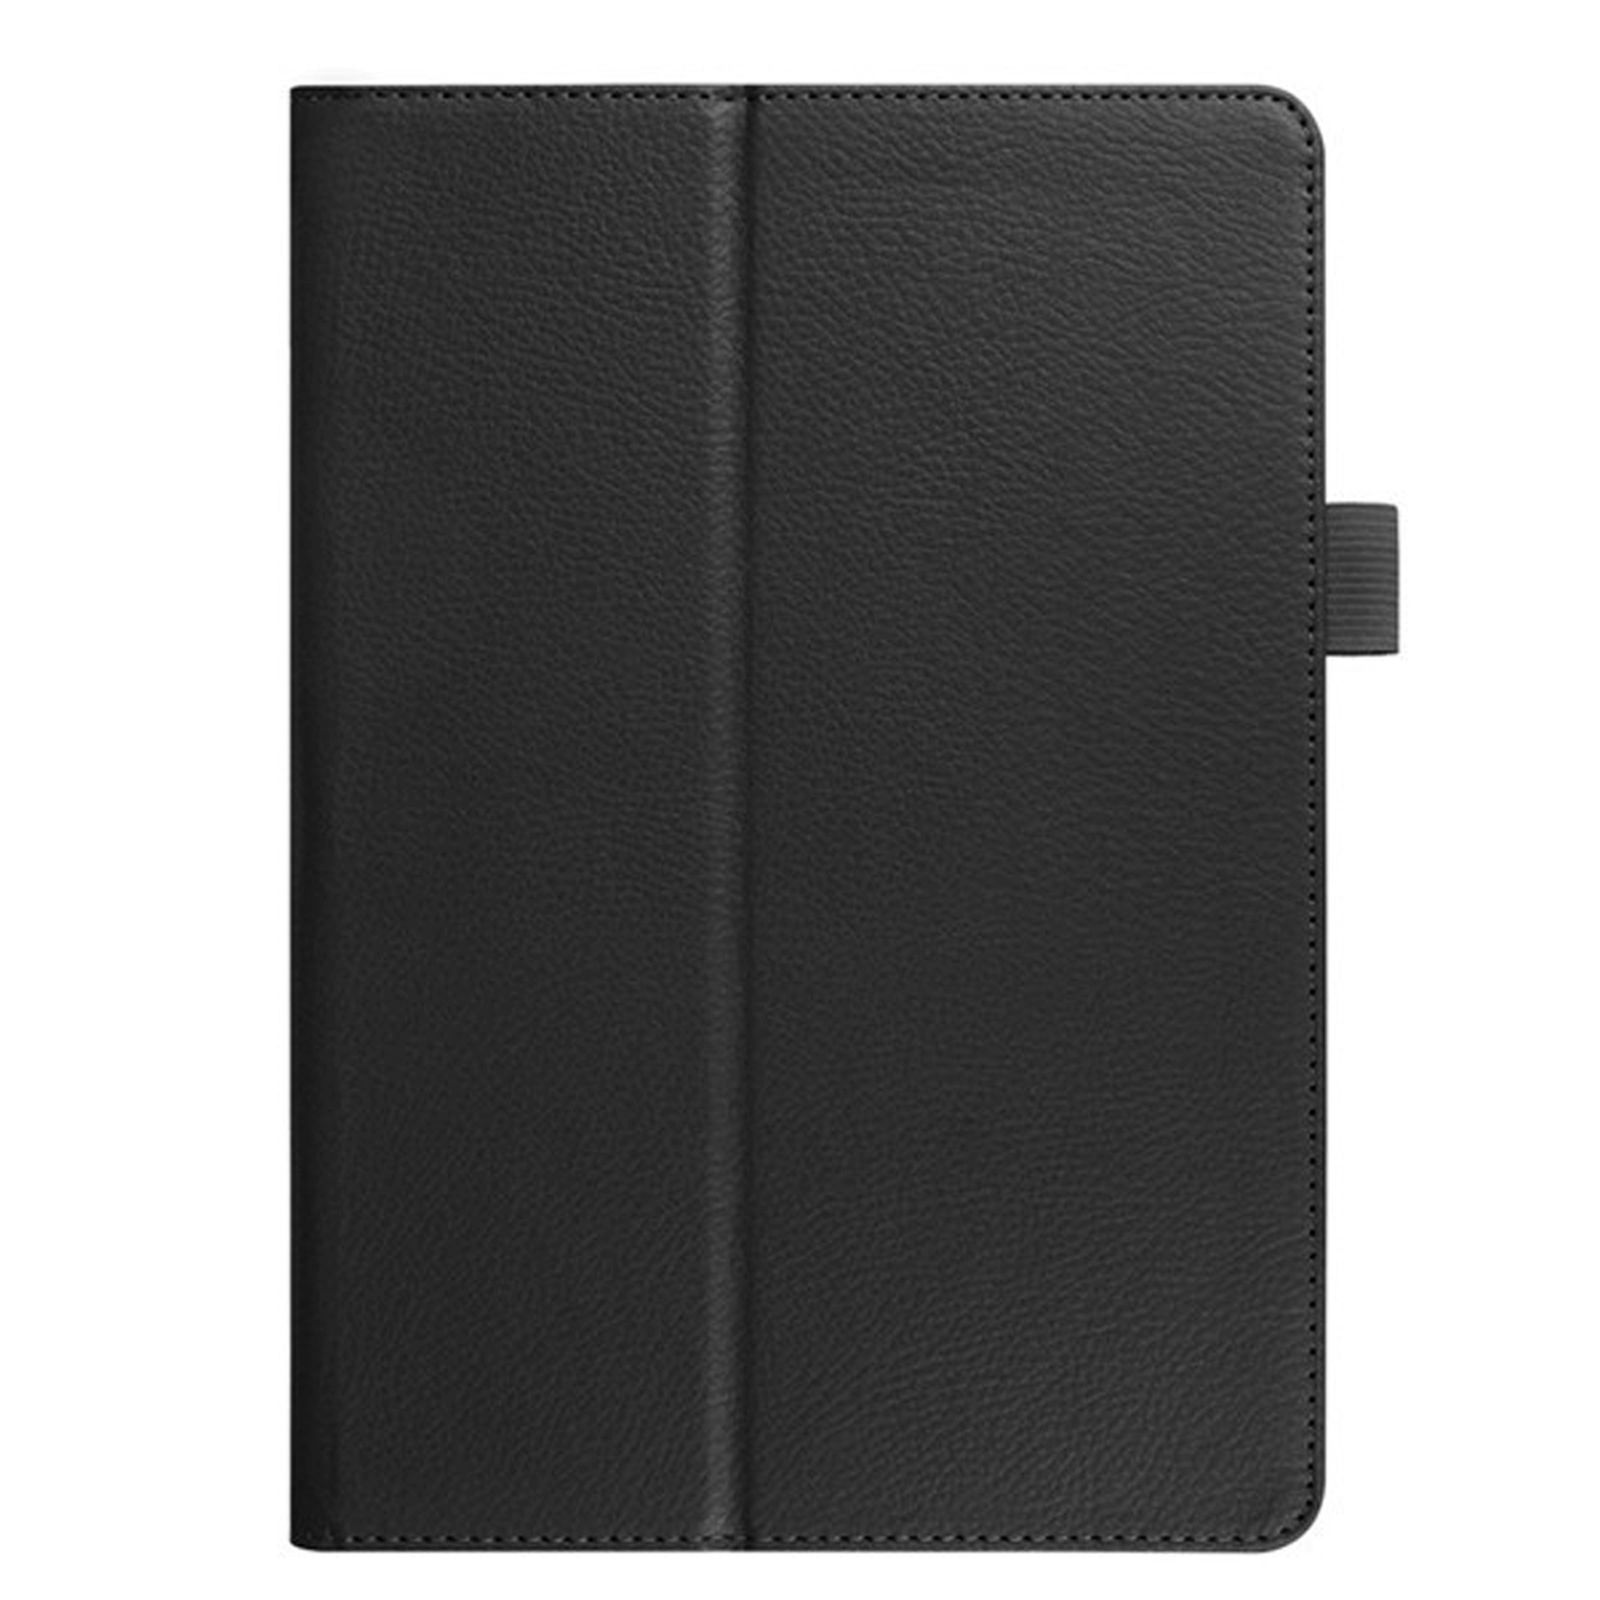 LOBWERK Hülle Schutzhülle Bookcover für 2020 Pro Apple iPad Kunstleder, Schwarz 12.9